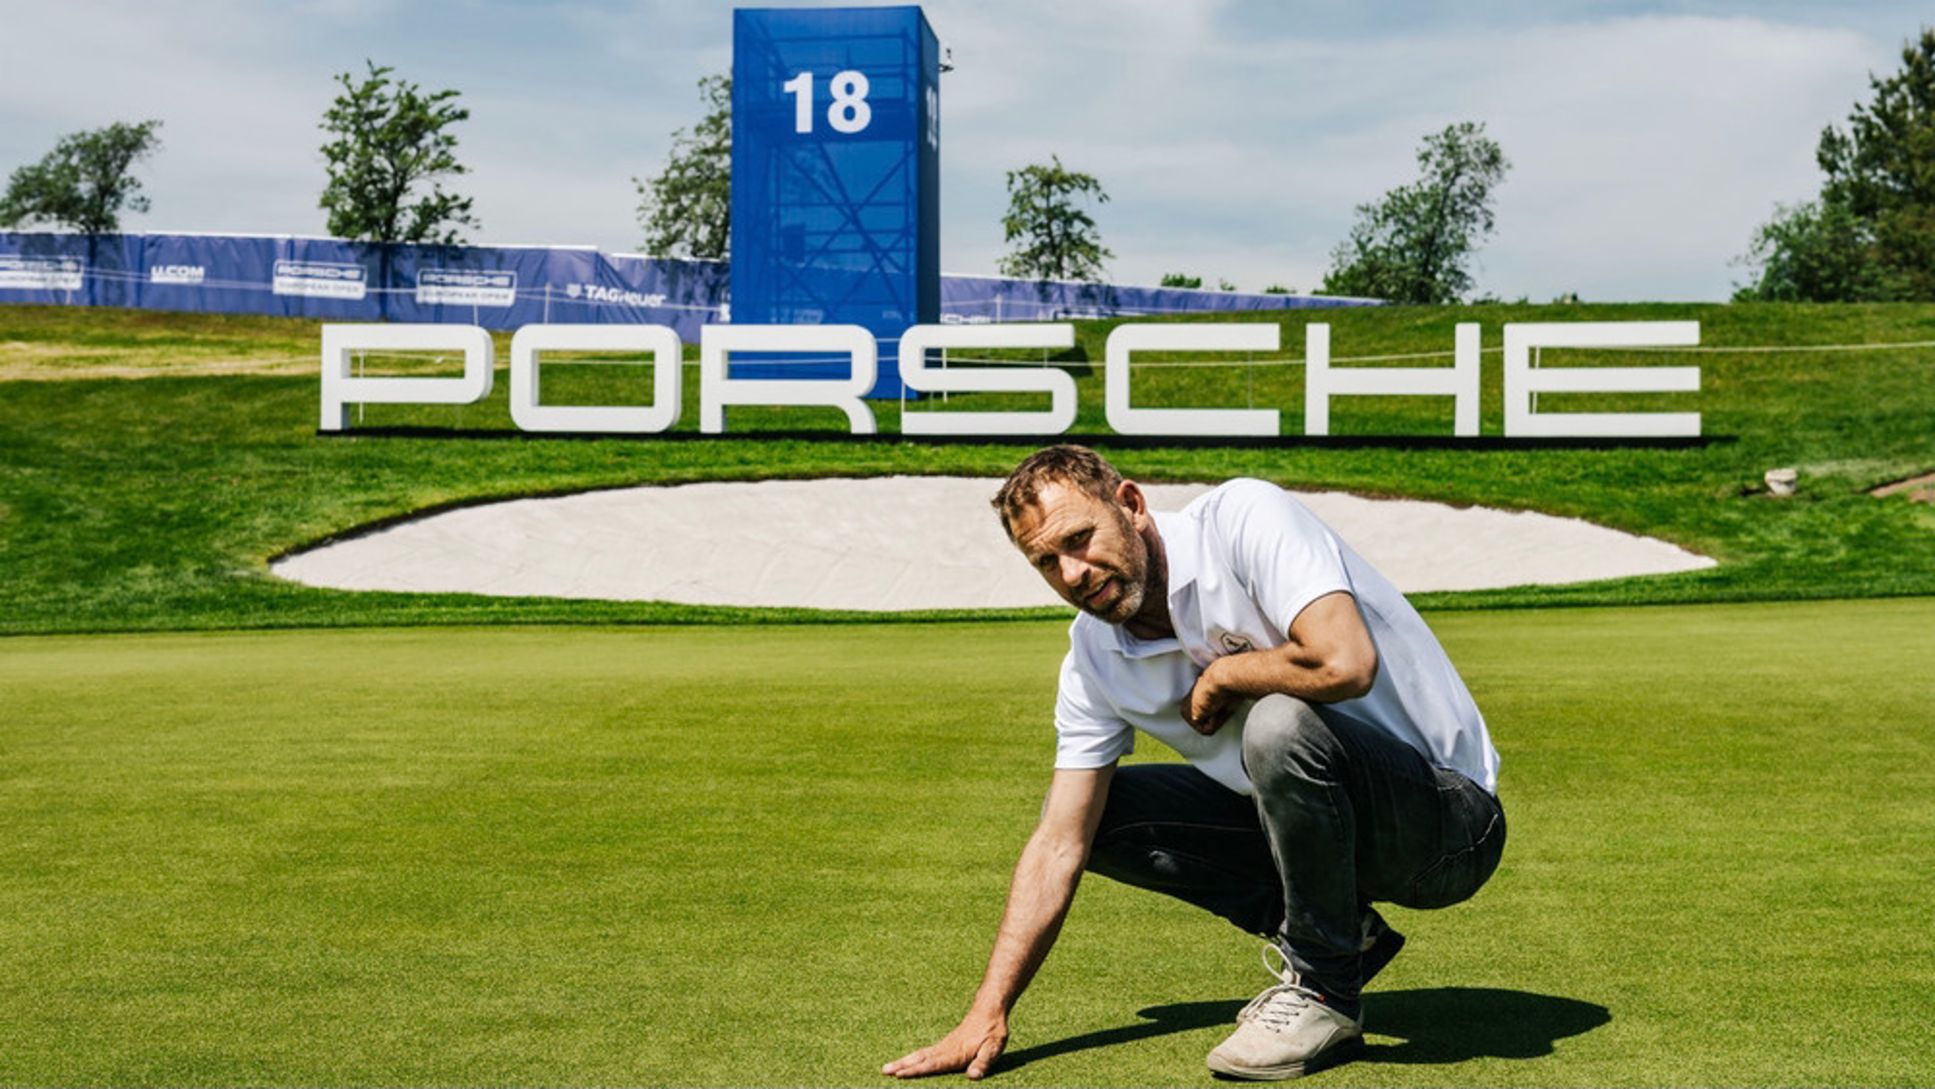 Michael Blesch, Mitbetreiber und Designer des Porsche Nord Course, auf dem 18. Grün, 2021, Porsche AG